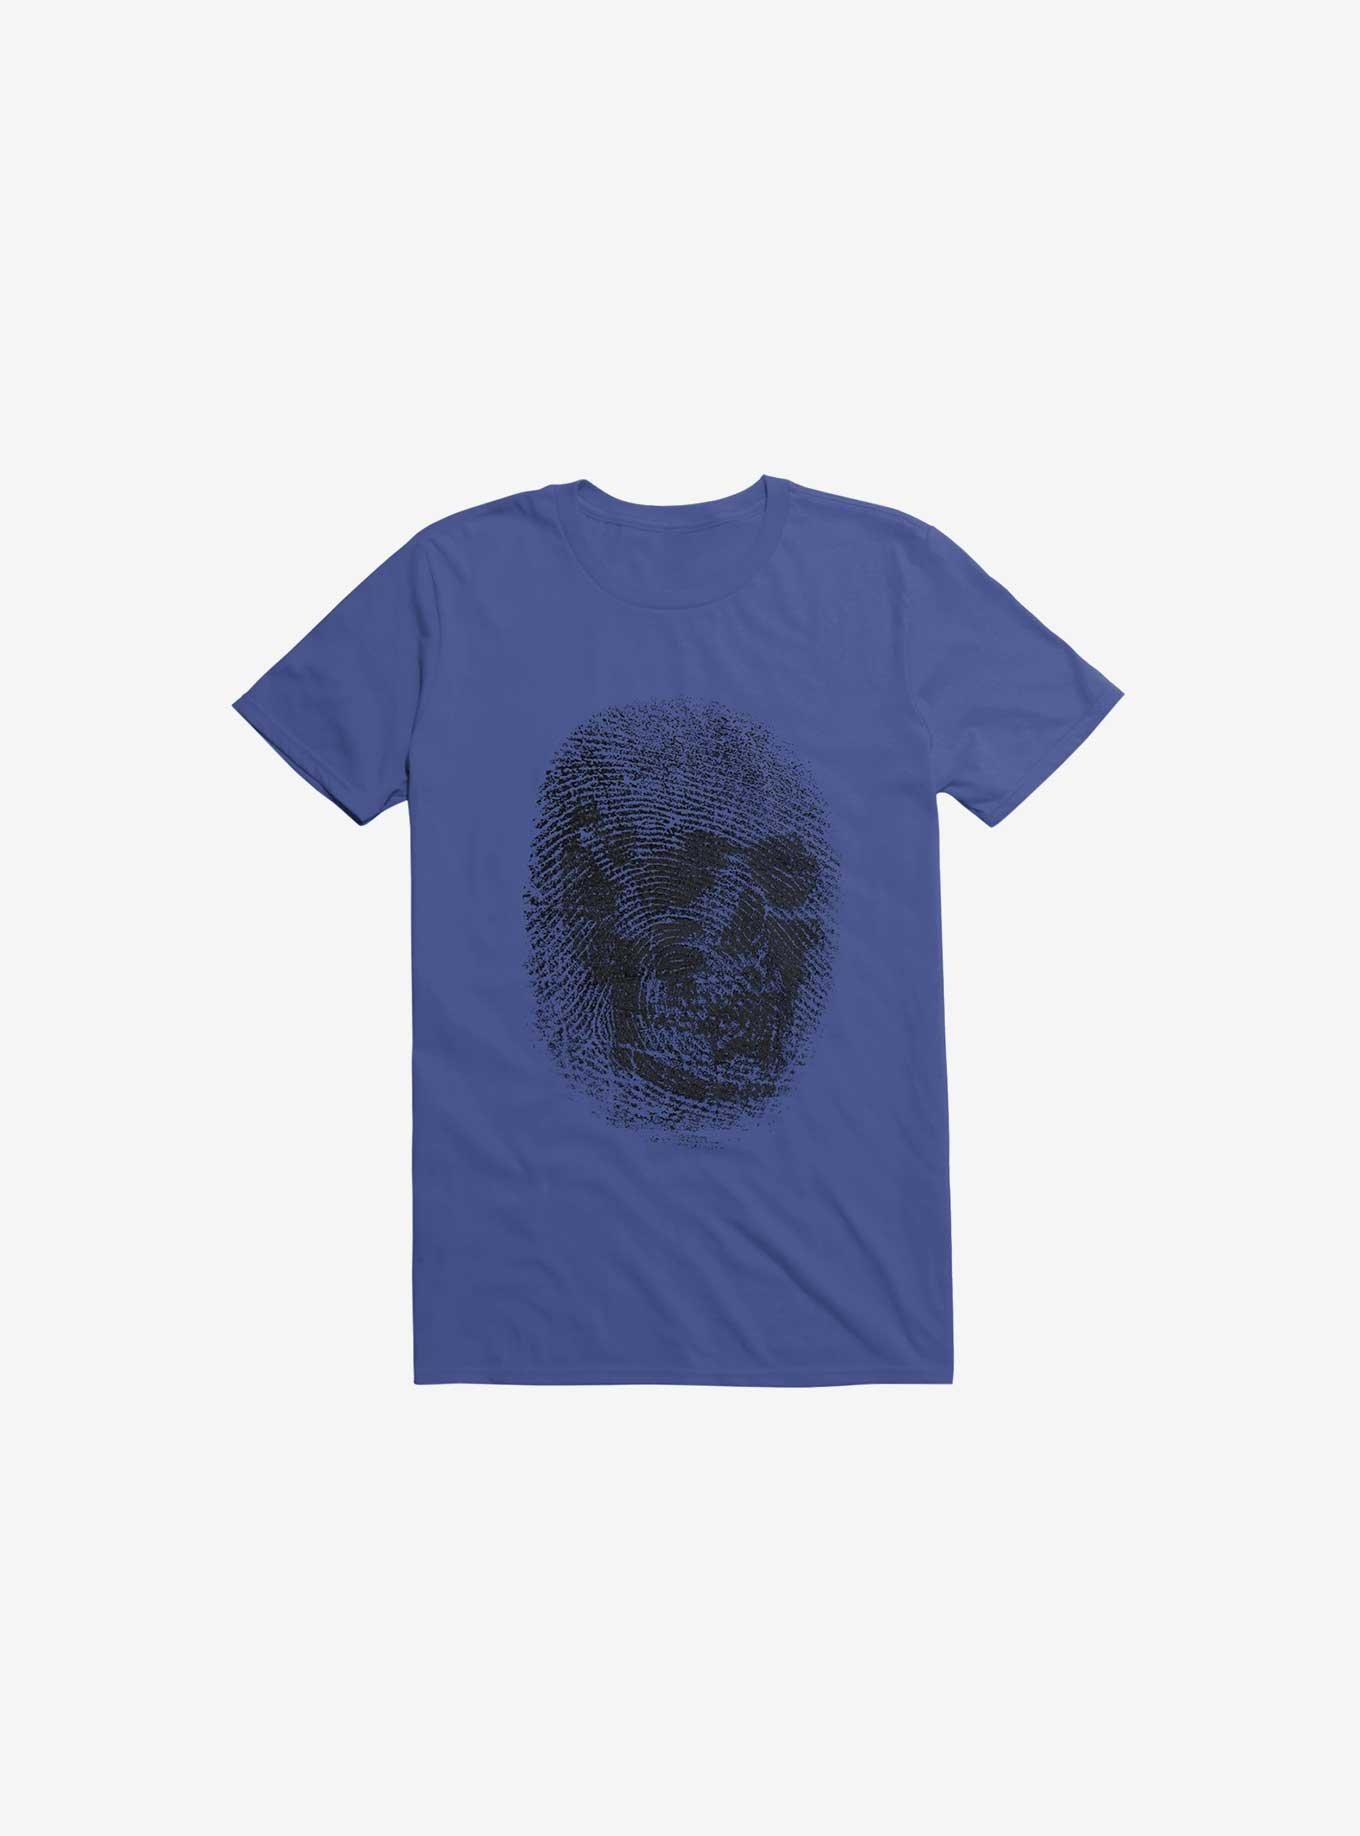 Unique And Equal Skull Fingerprint Royal Blue T-Shirt, , hi-res